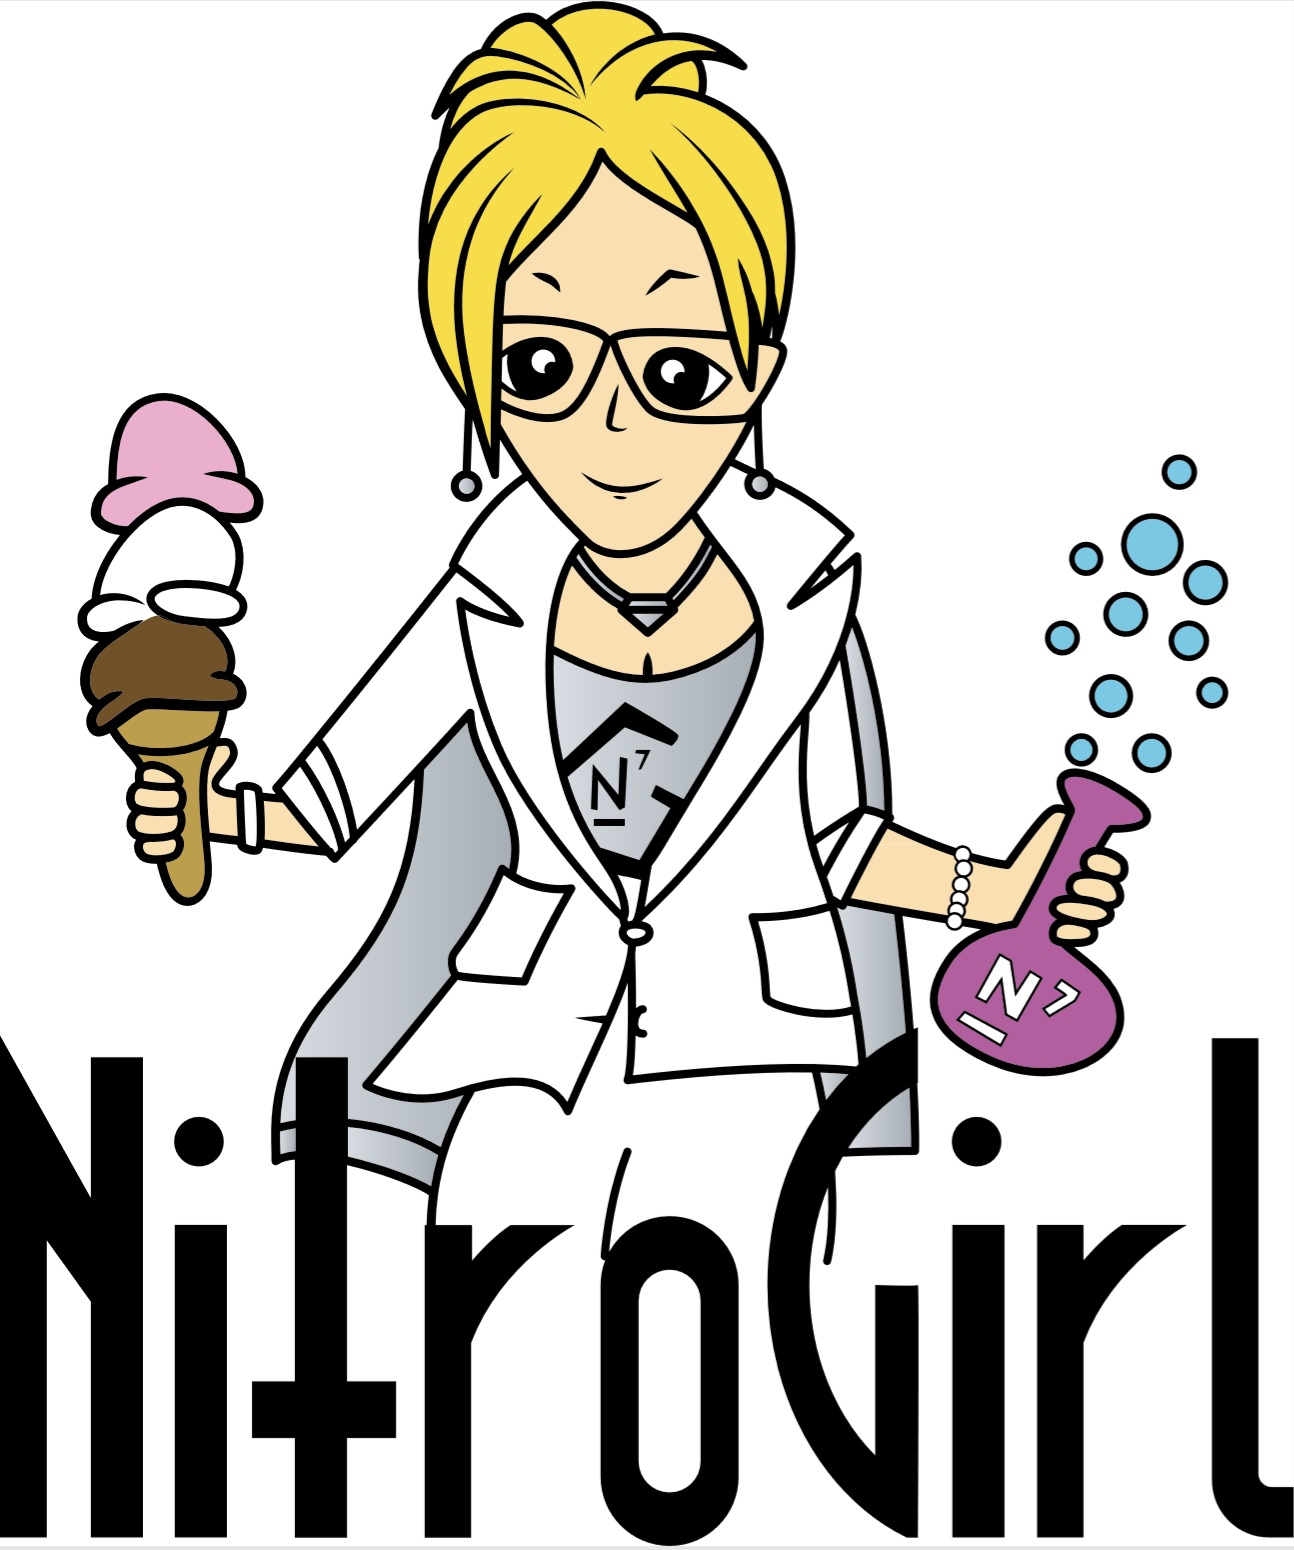 NitroGirl LLC